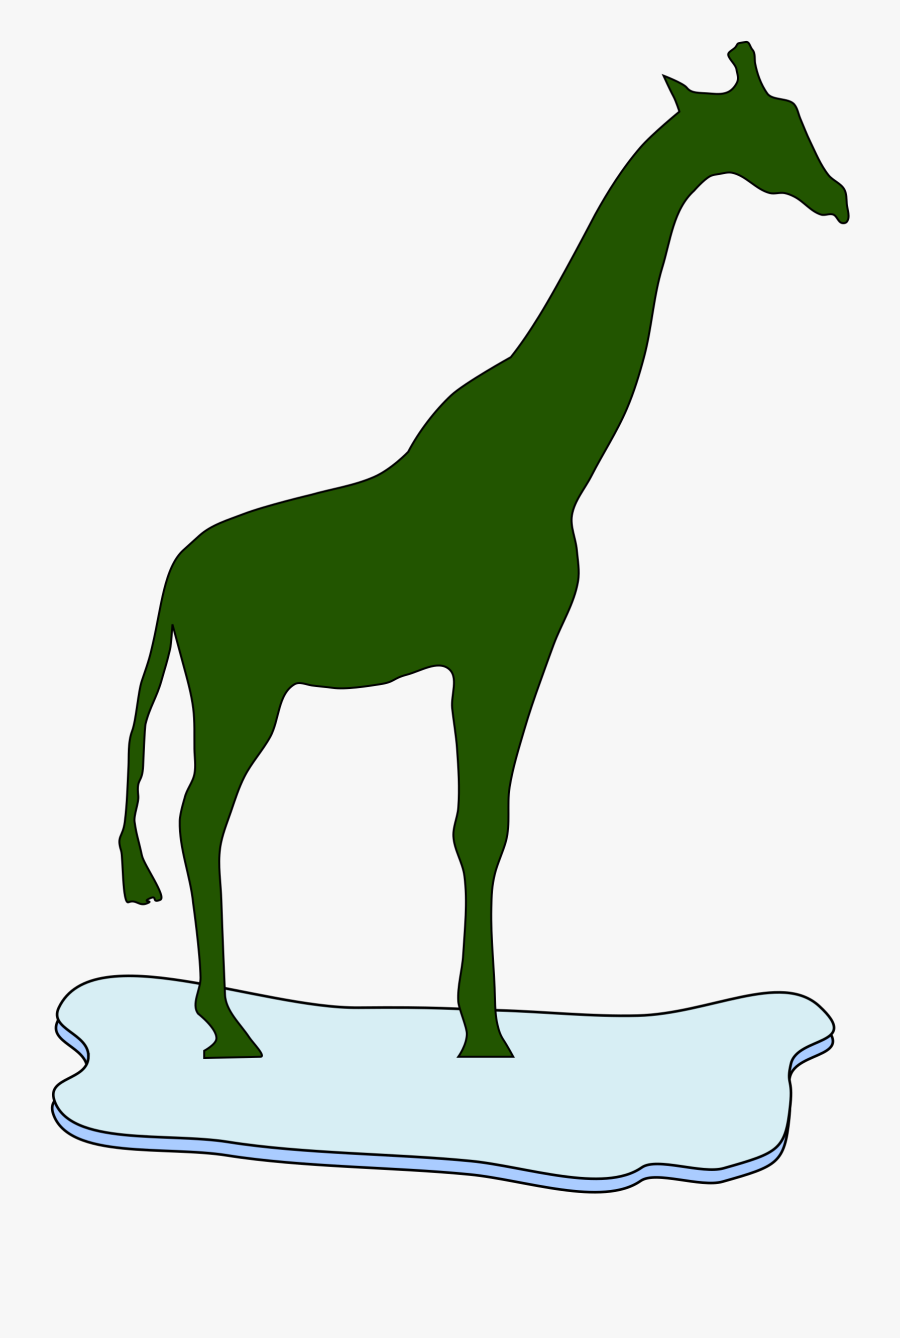 Giraffe Clipart High Resolution, Transparent Clipart